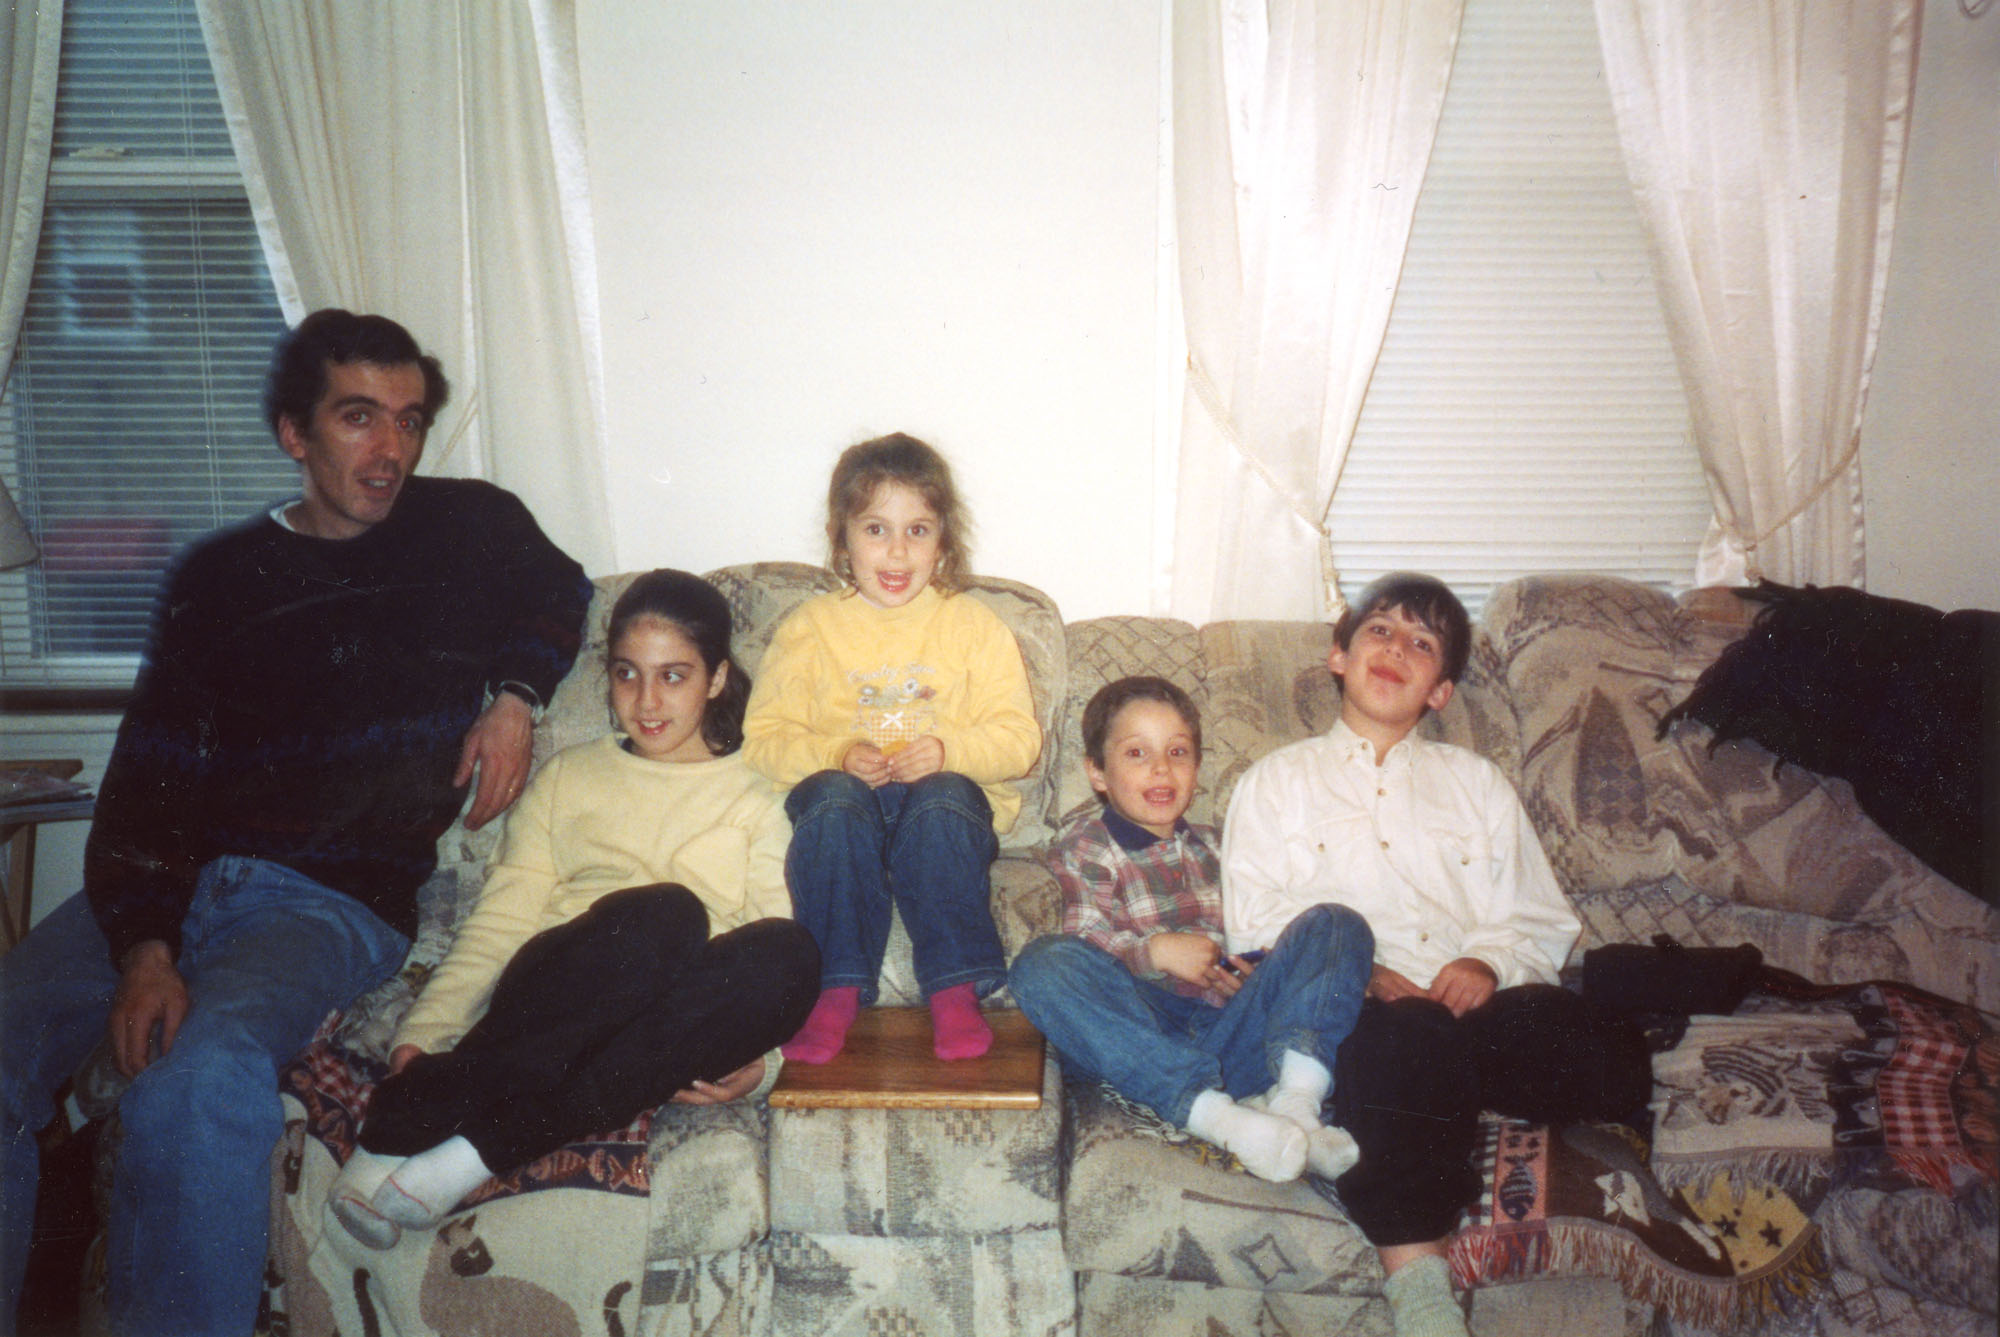 Une famille assise sur un divan.